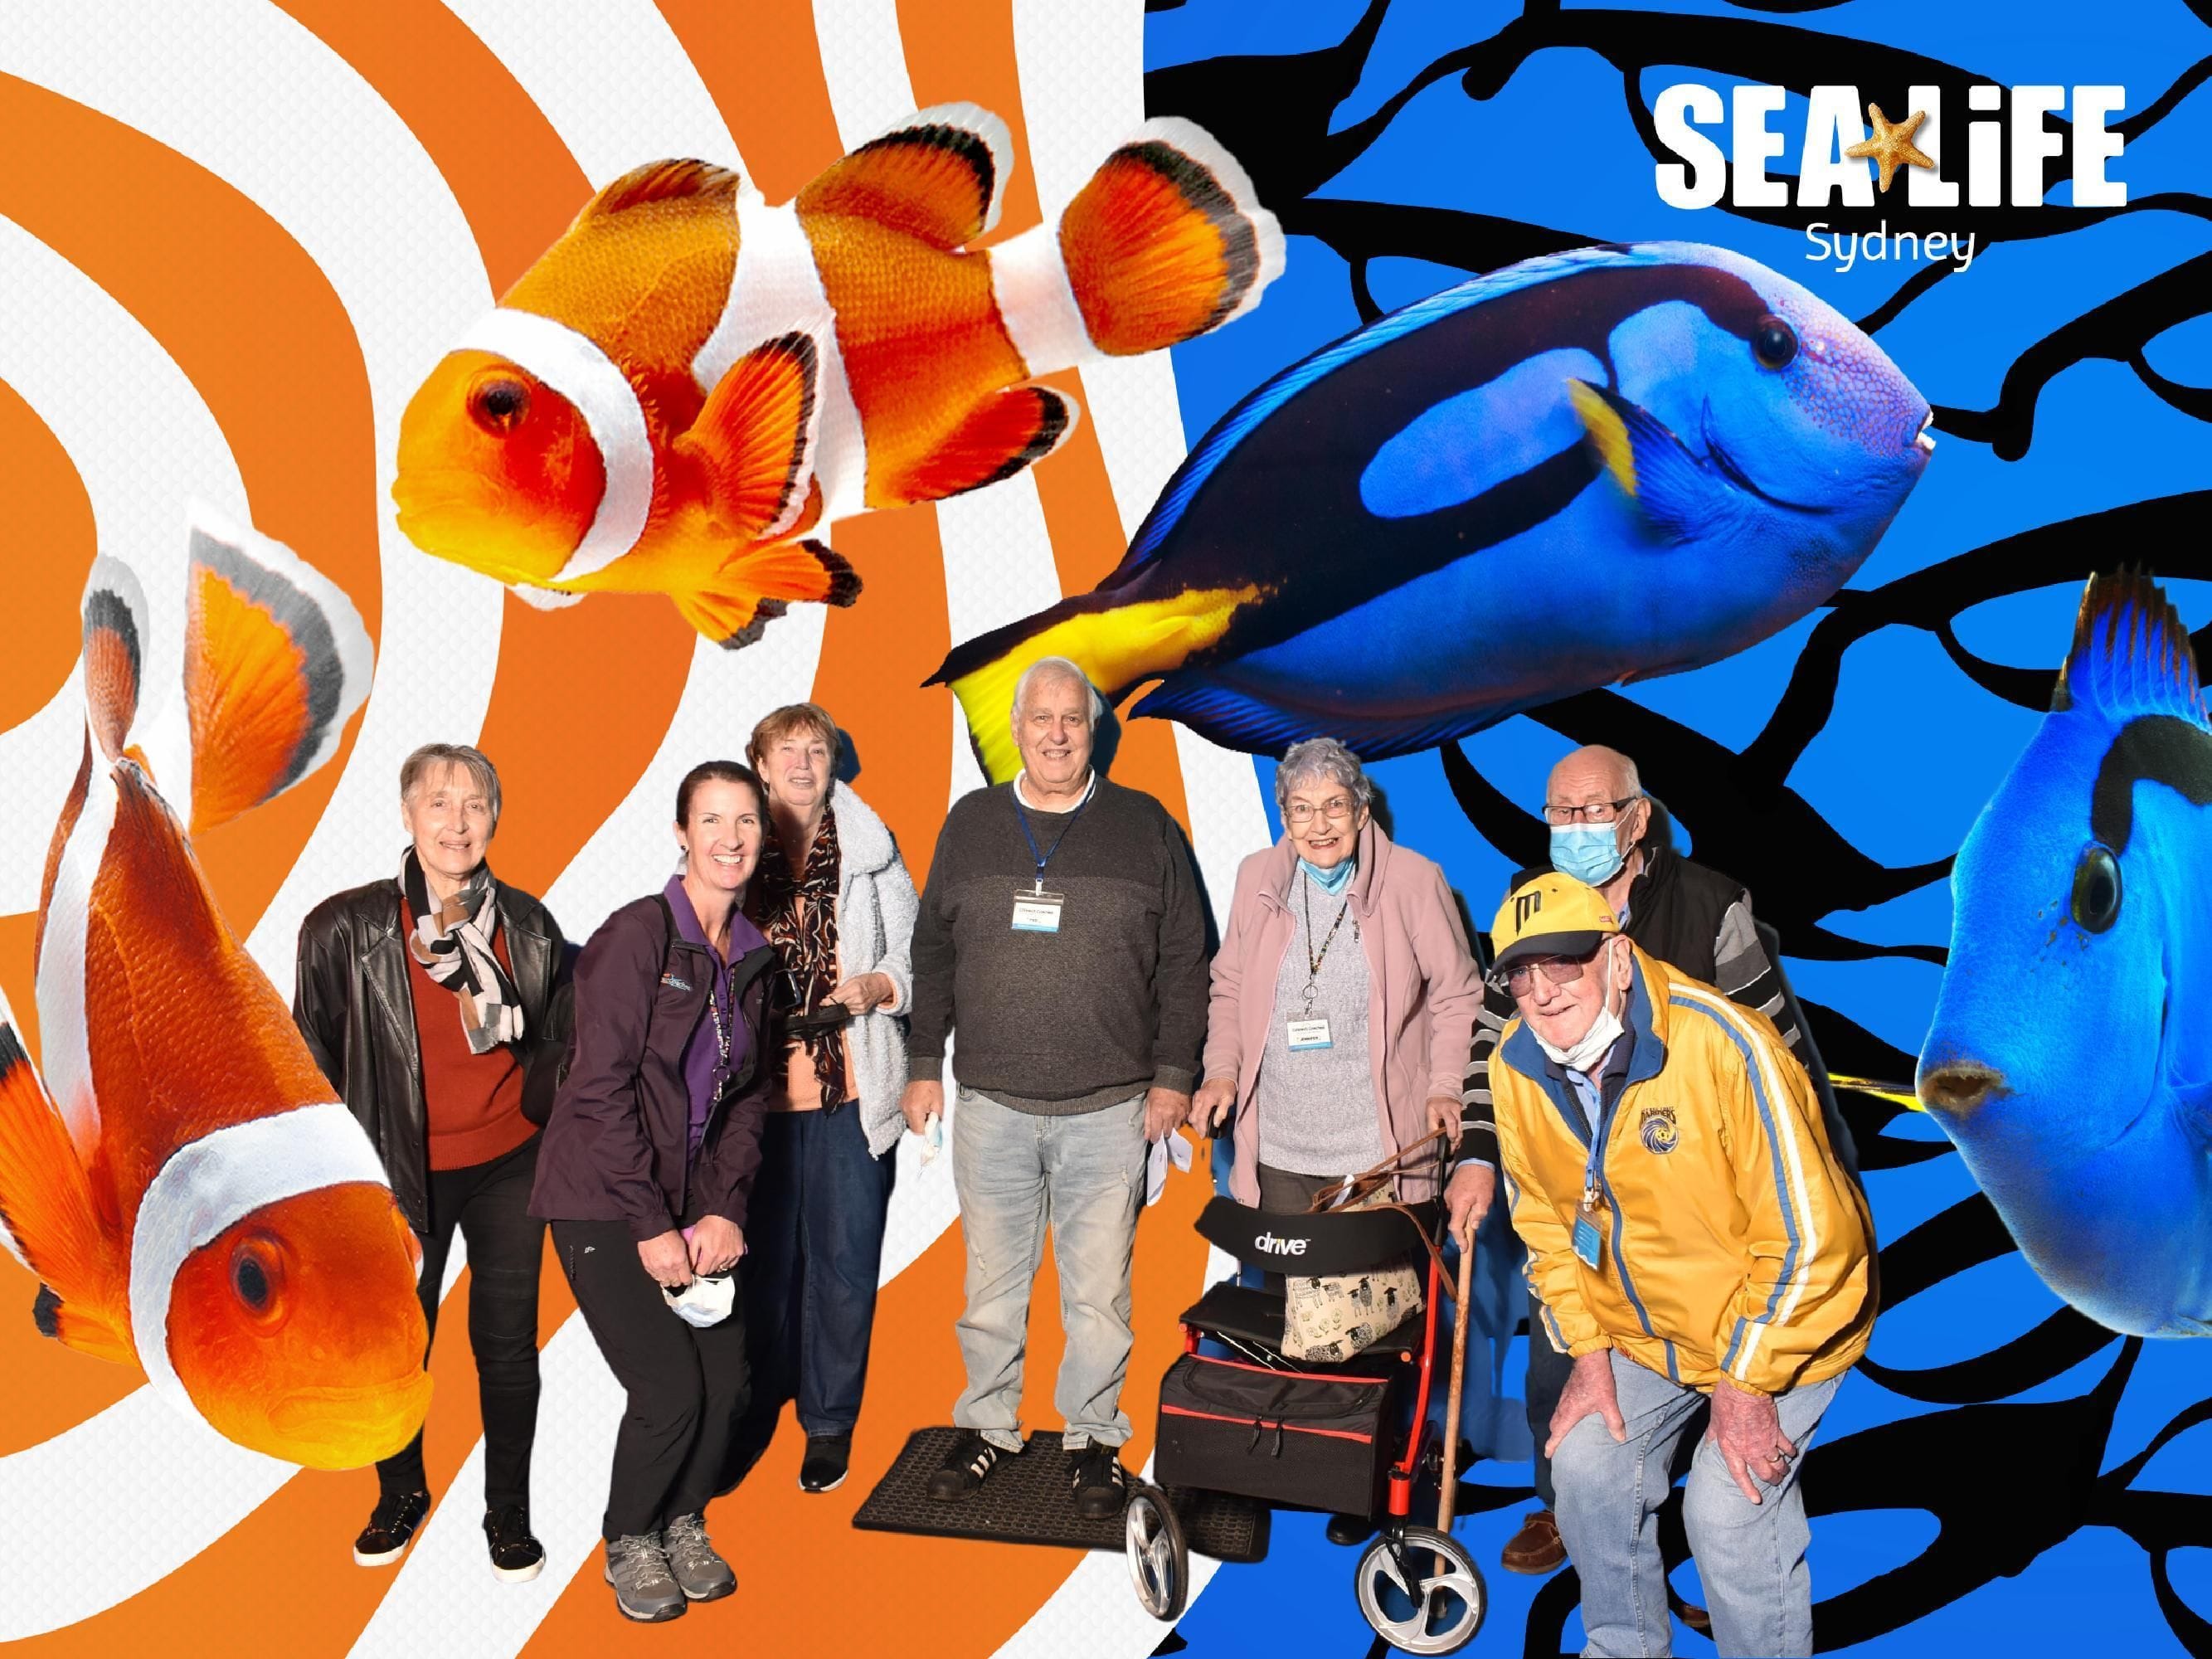 Sealife Sydney Aquarium - 12th July 2022 Image -62cd26b34af91